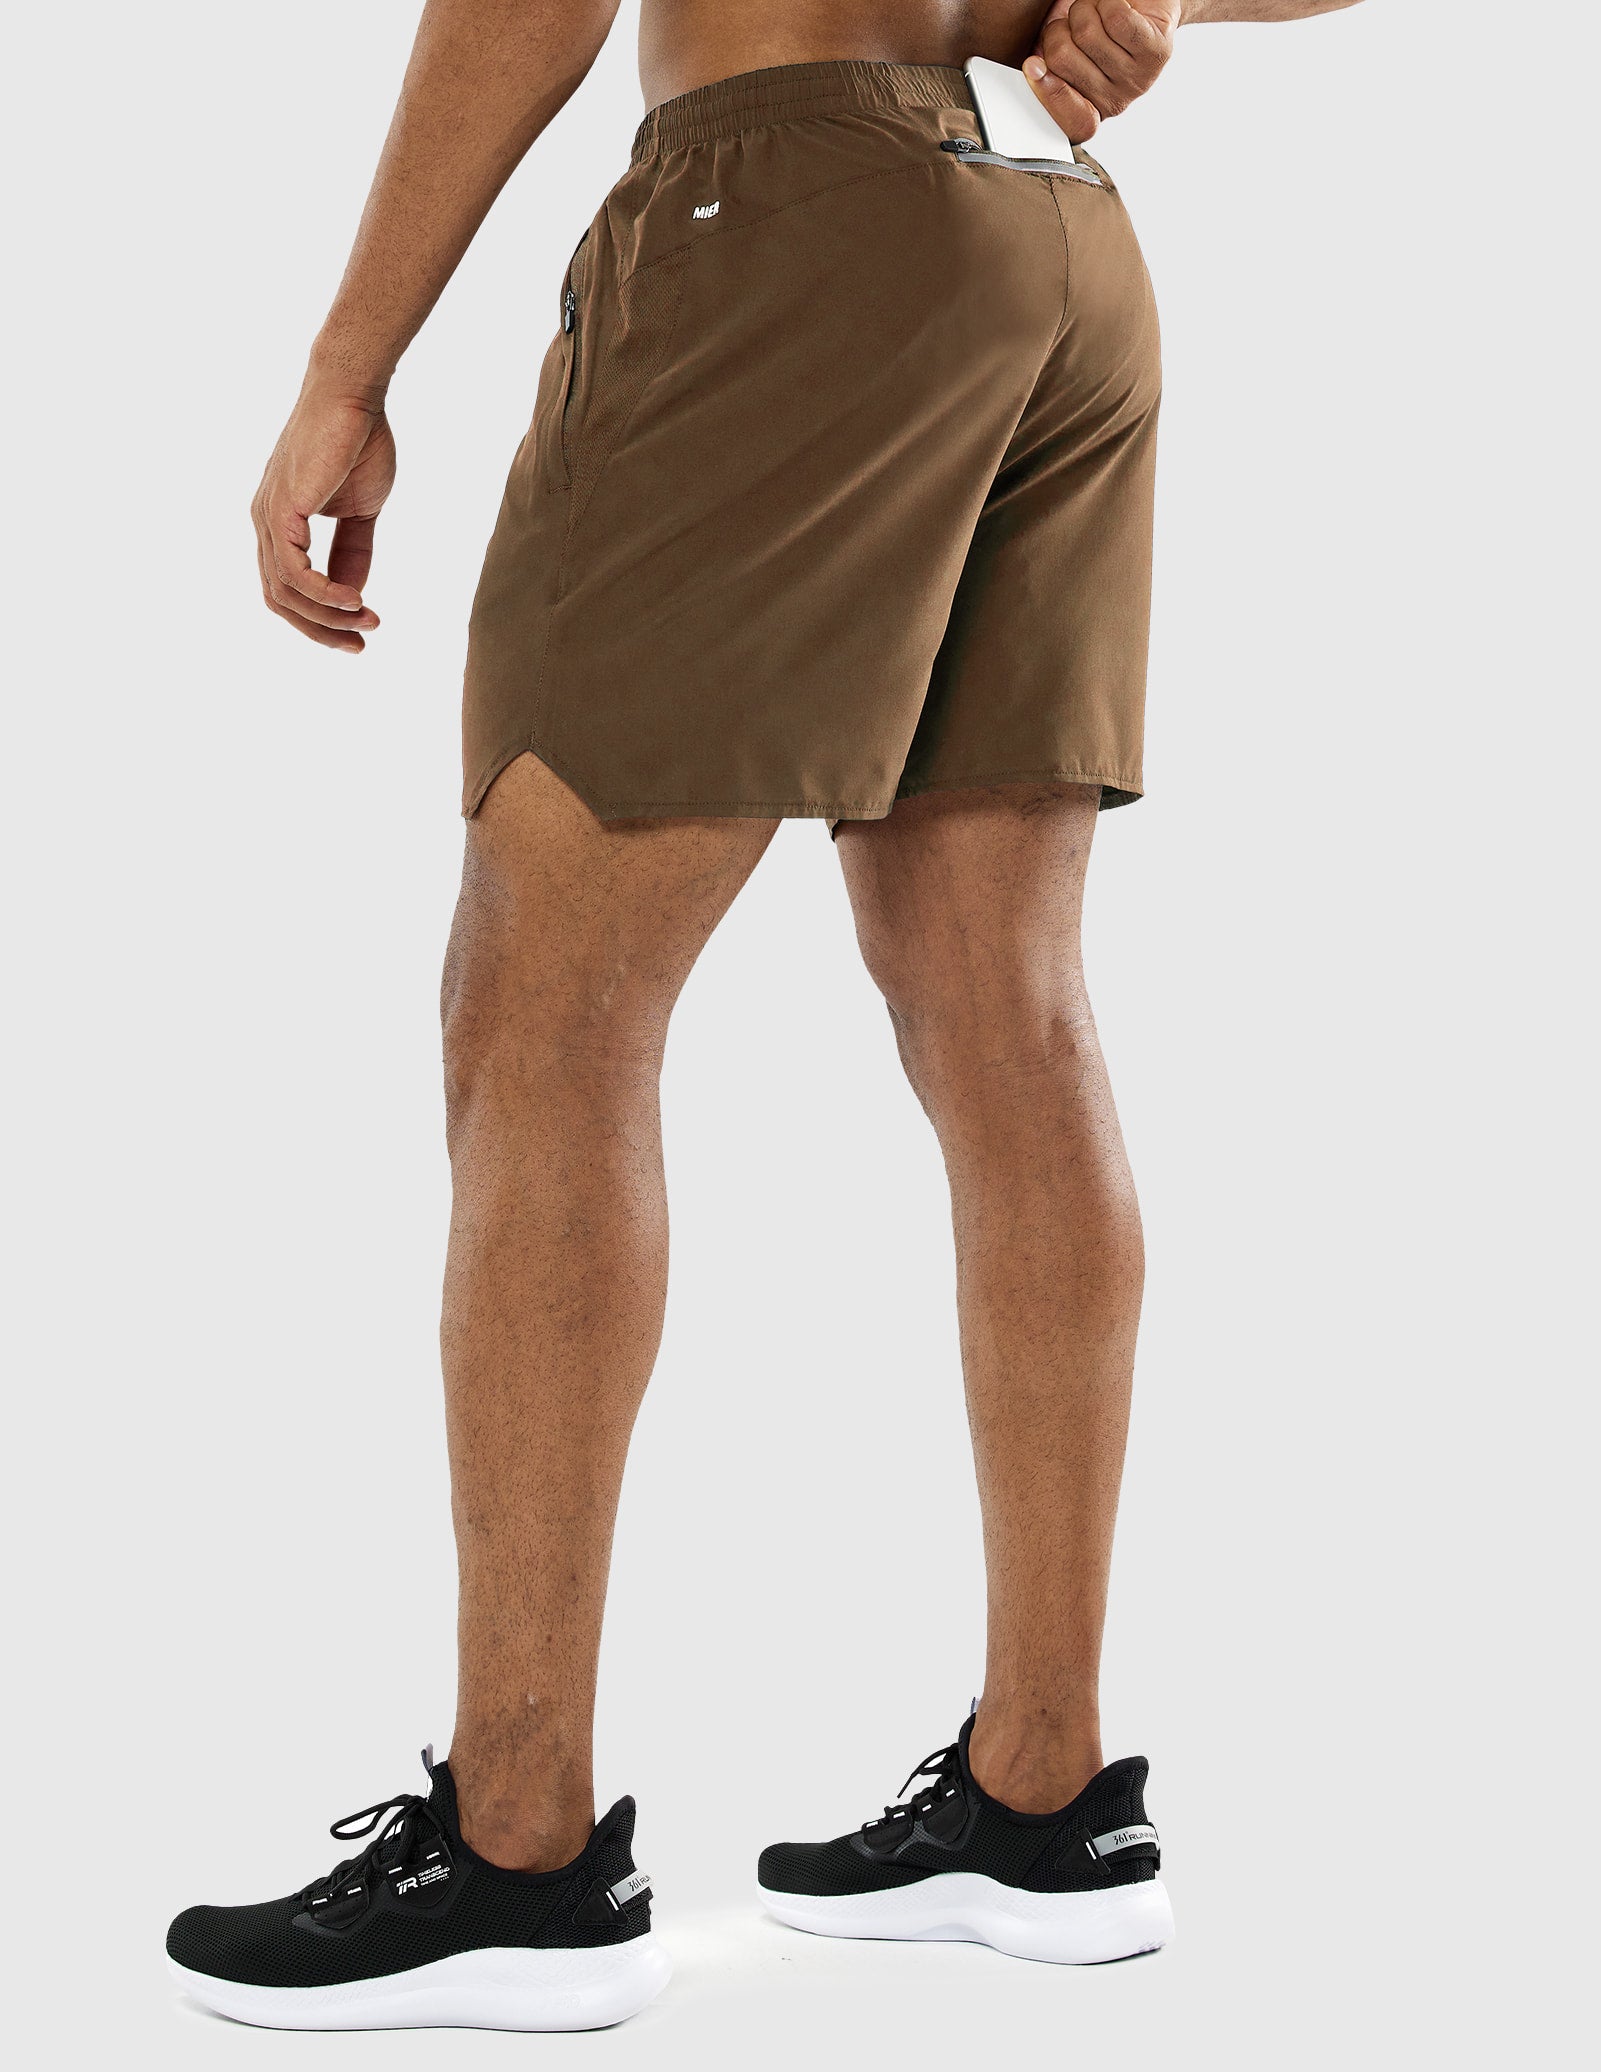 Pantalones cortos de entrenamiento para hombre de 5 pulgadas con bolsillos con cremallera